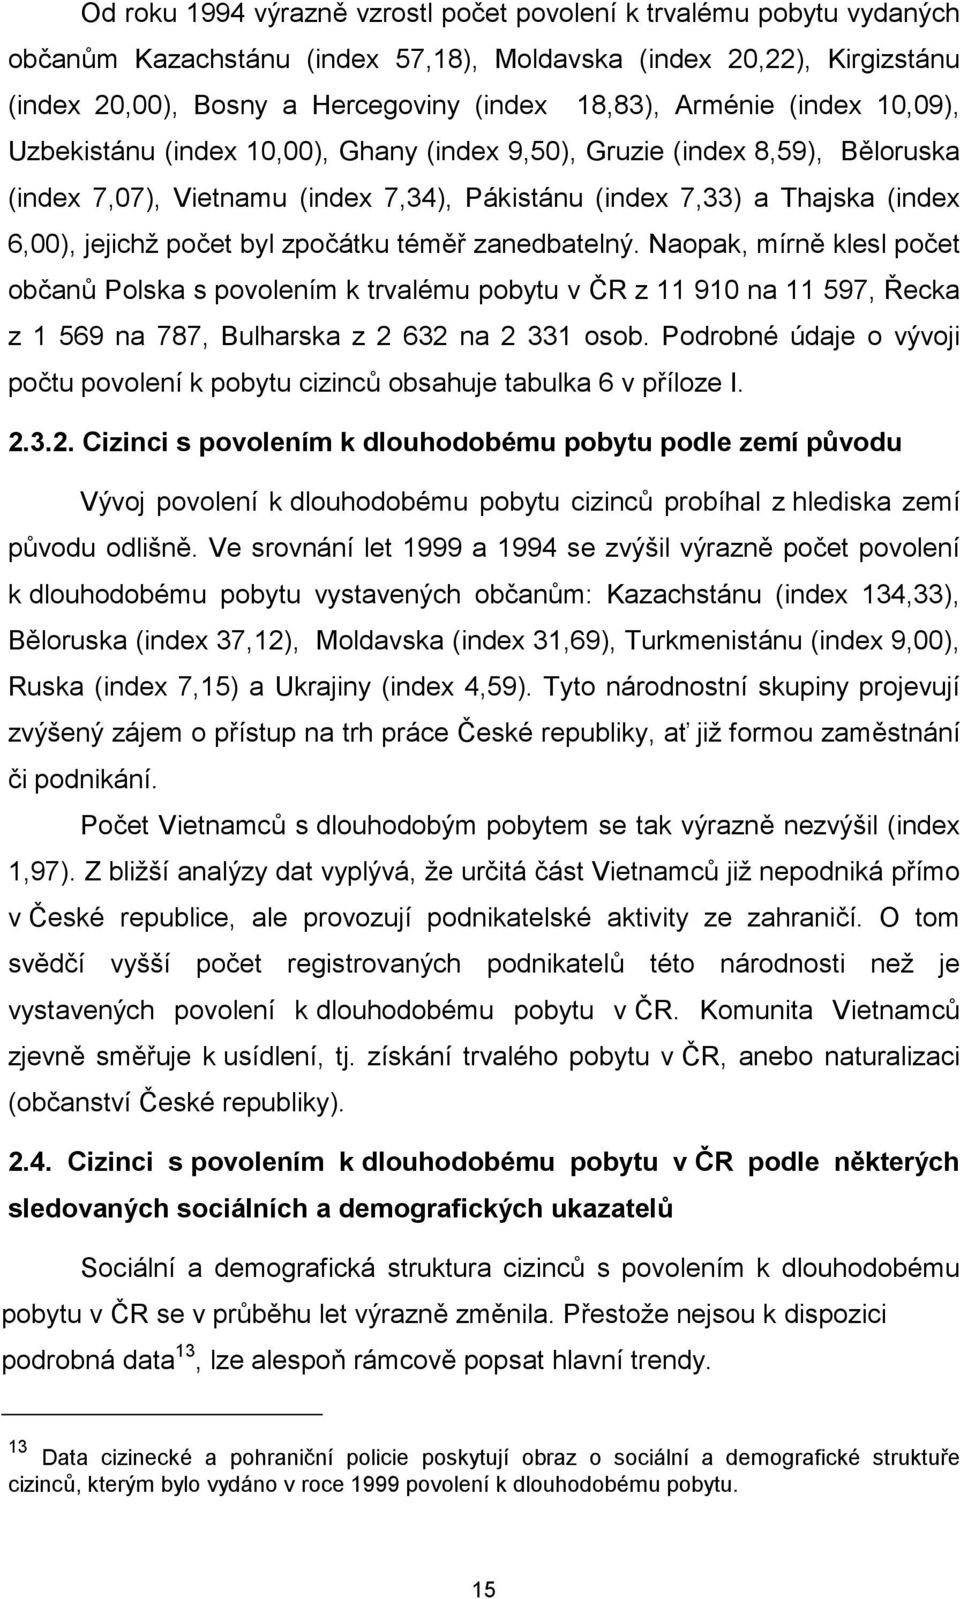 byl zpočátku téměř zanedbatelný. Naopak, mírně klesl počet občanů Polska s povolením k trvalému pobytu v ČR z 11 910 na 11 597, Řecka z 1 569 na 787, Bulharska z 2 632 na 2 331 osob.